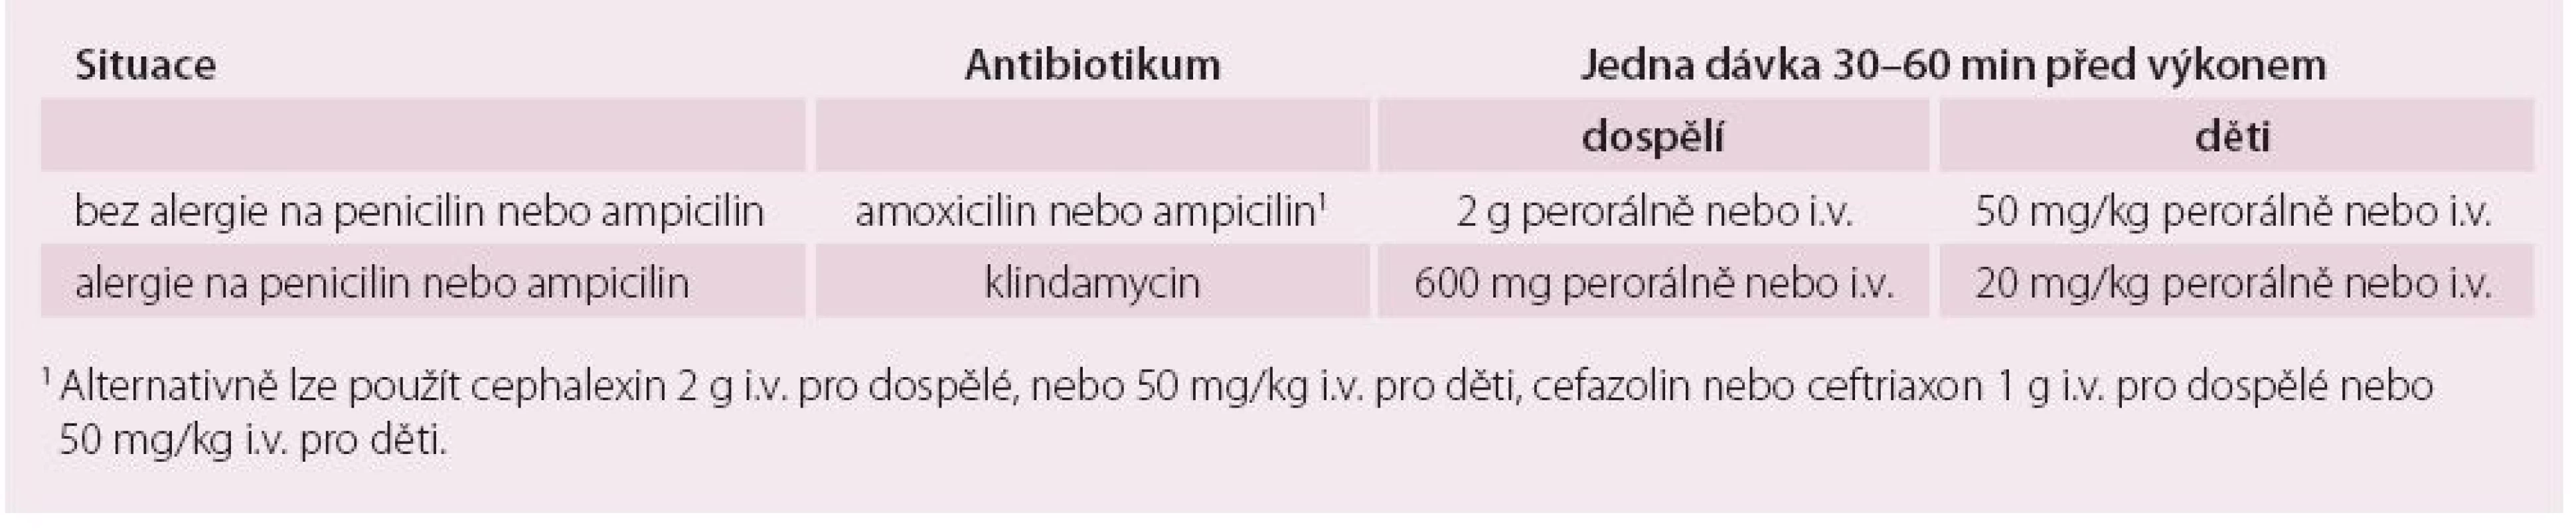 Antibiotické režimy profylaxe infekční endokarditidy u vysoce rizikových stomatologických výkonů (u pacientů s vysokým rizikem vzniku IE). 